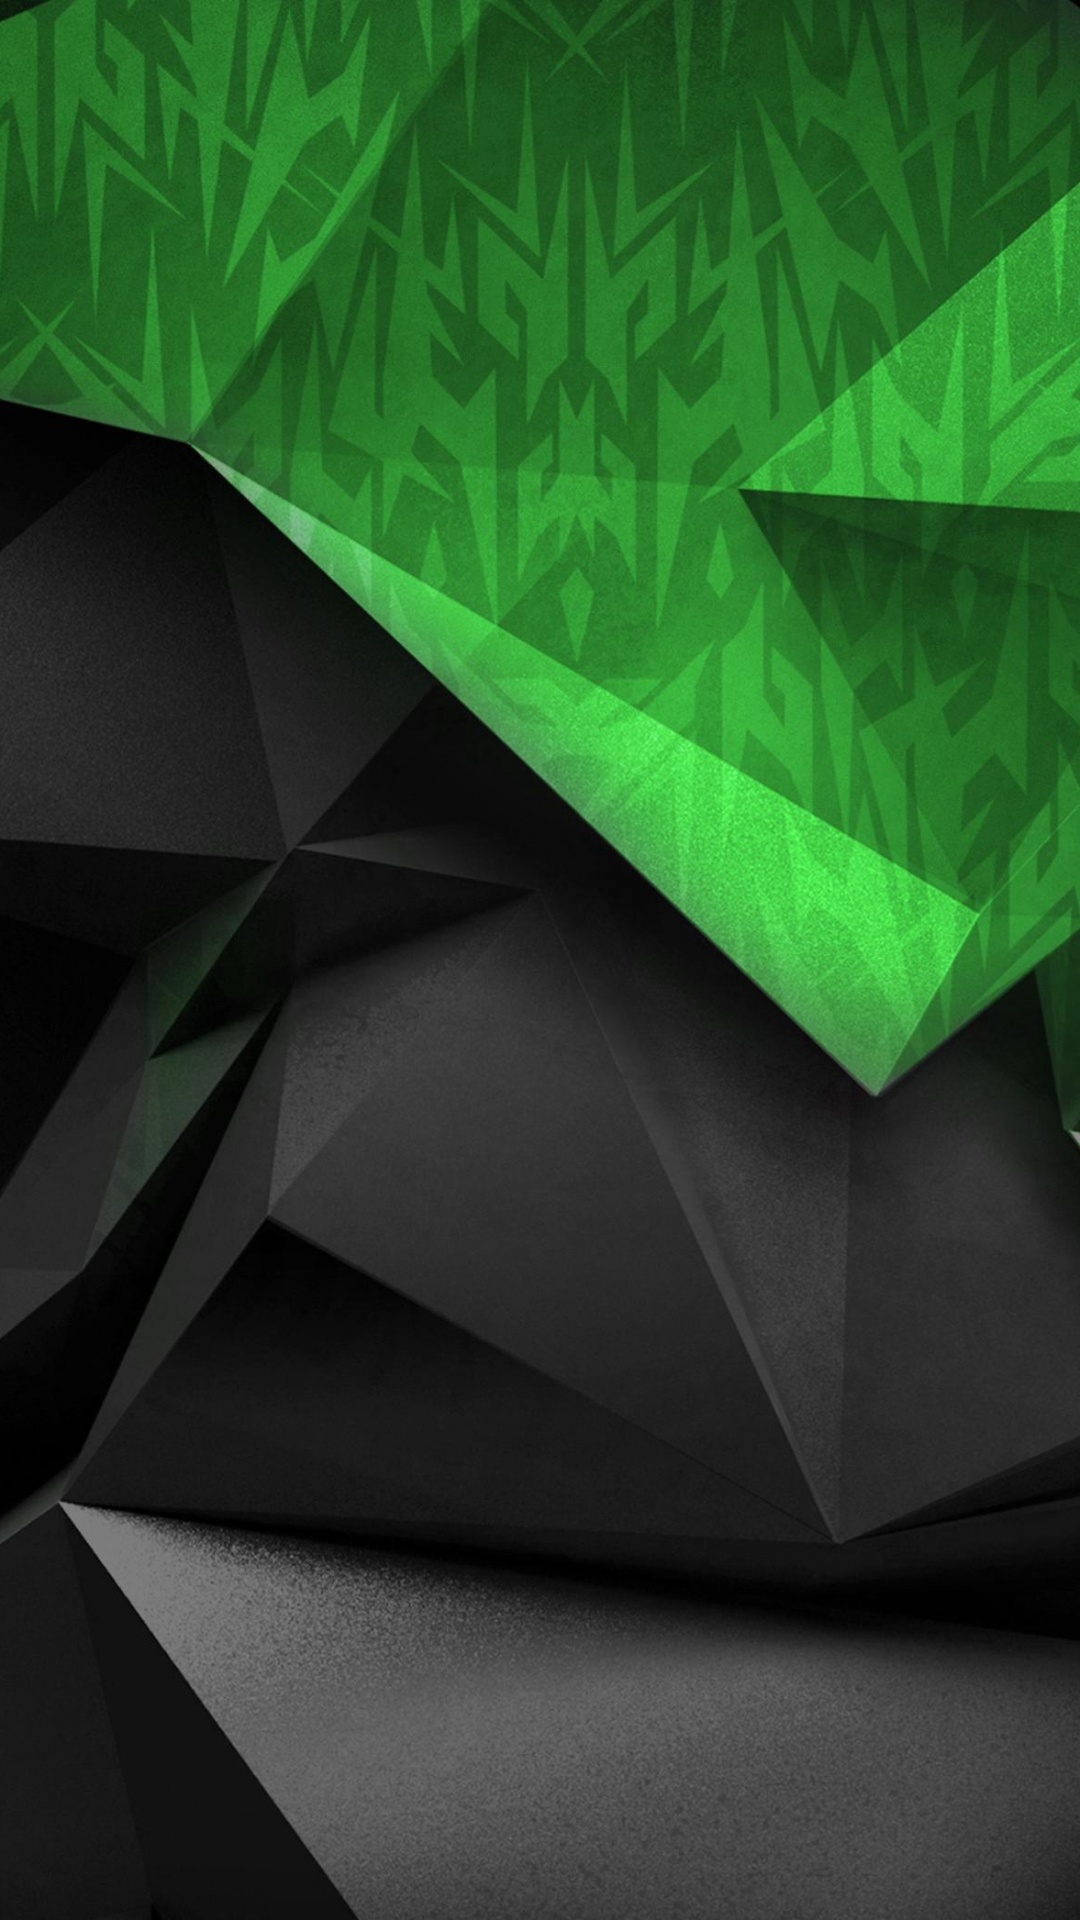 宏碁, 绿色的, 宏碁渴望, 三角形, 戴尔 壁纸 1080x1920 允许